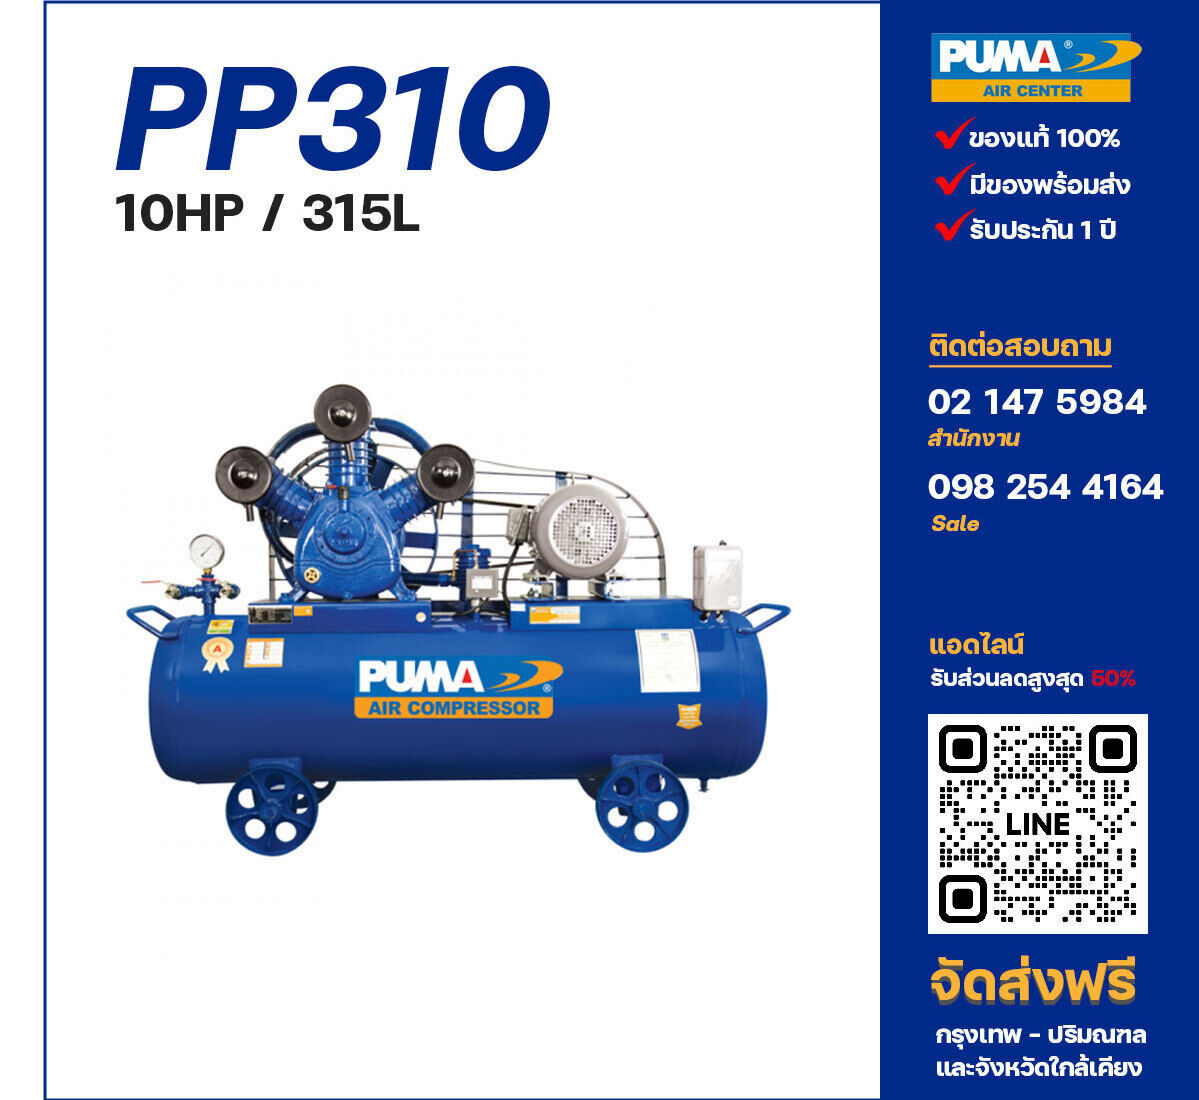 ปั๊มลมพูม่า PUMA PP310-PPM380V ปั๊มลมลูกสูบ ขนาด 3 สูบ 10 แรงม้า 315 ลิตร PUMA พร้อมมอเตอร์ PUMA ไฟ 380V ส่งฟรี กรุงเทพฯ-ปริมณฑล รับประกัน 1 ปี